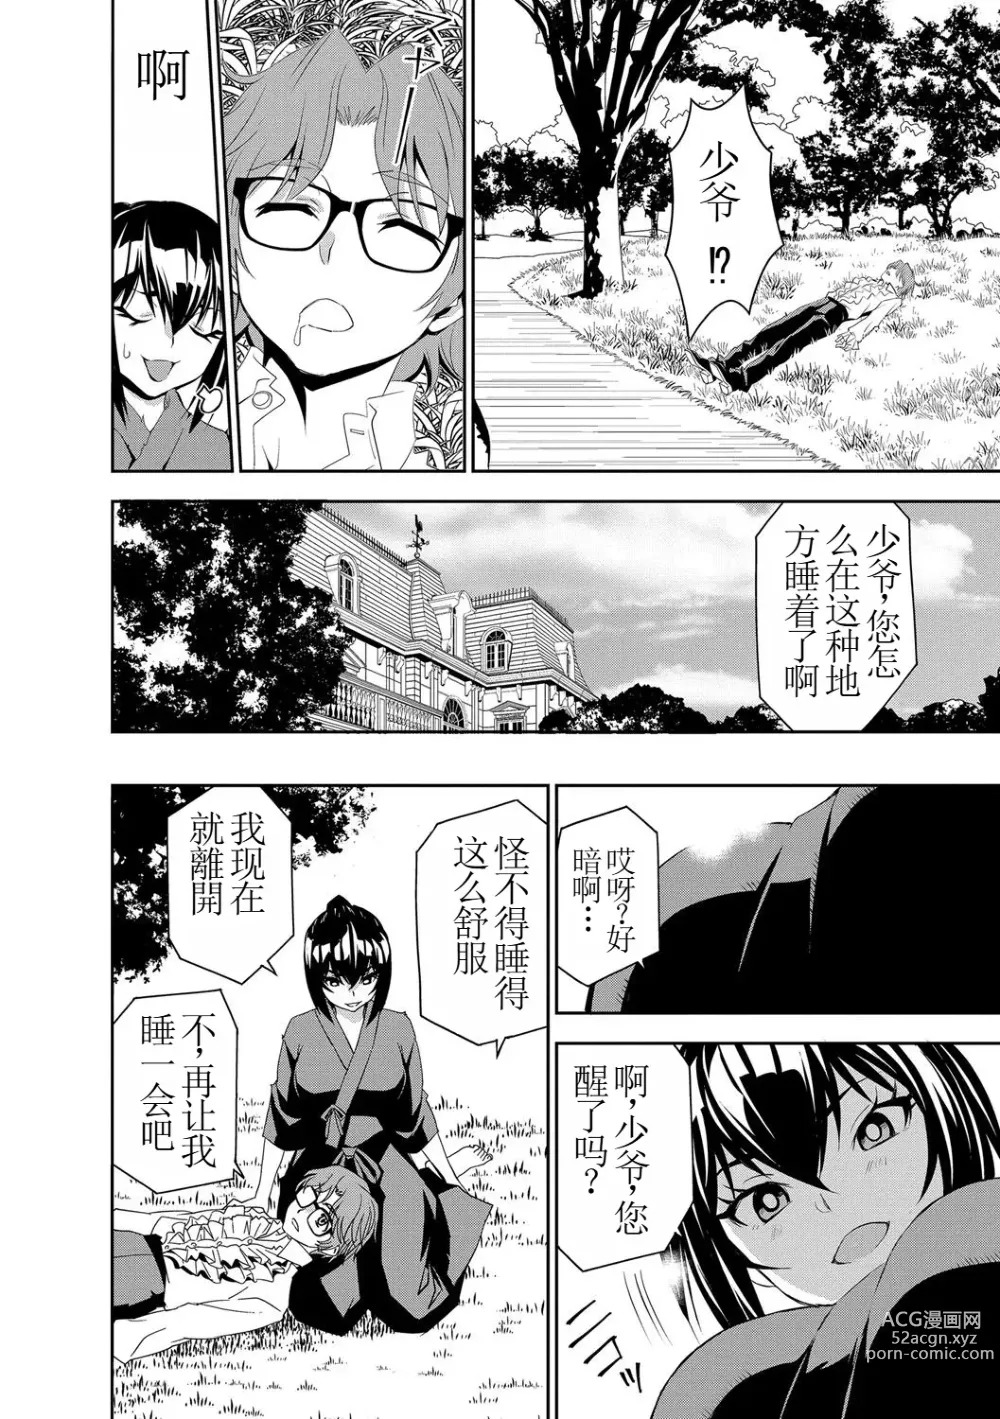 Page 4 of manga 讓我懷孕女僕隊 第4話